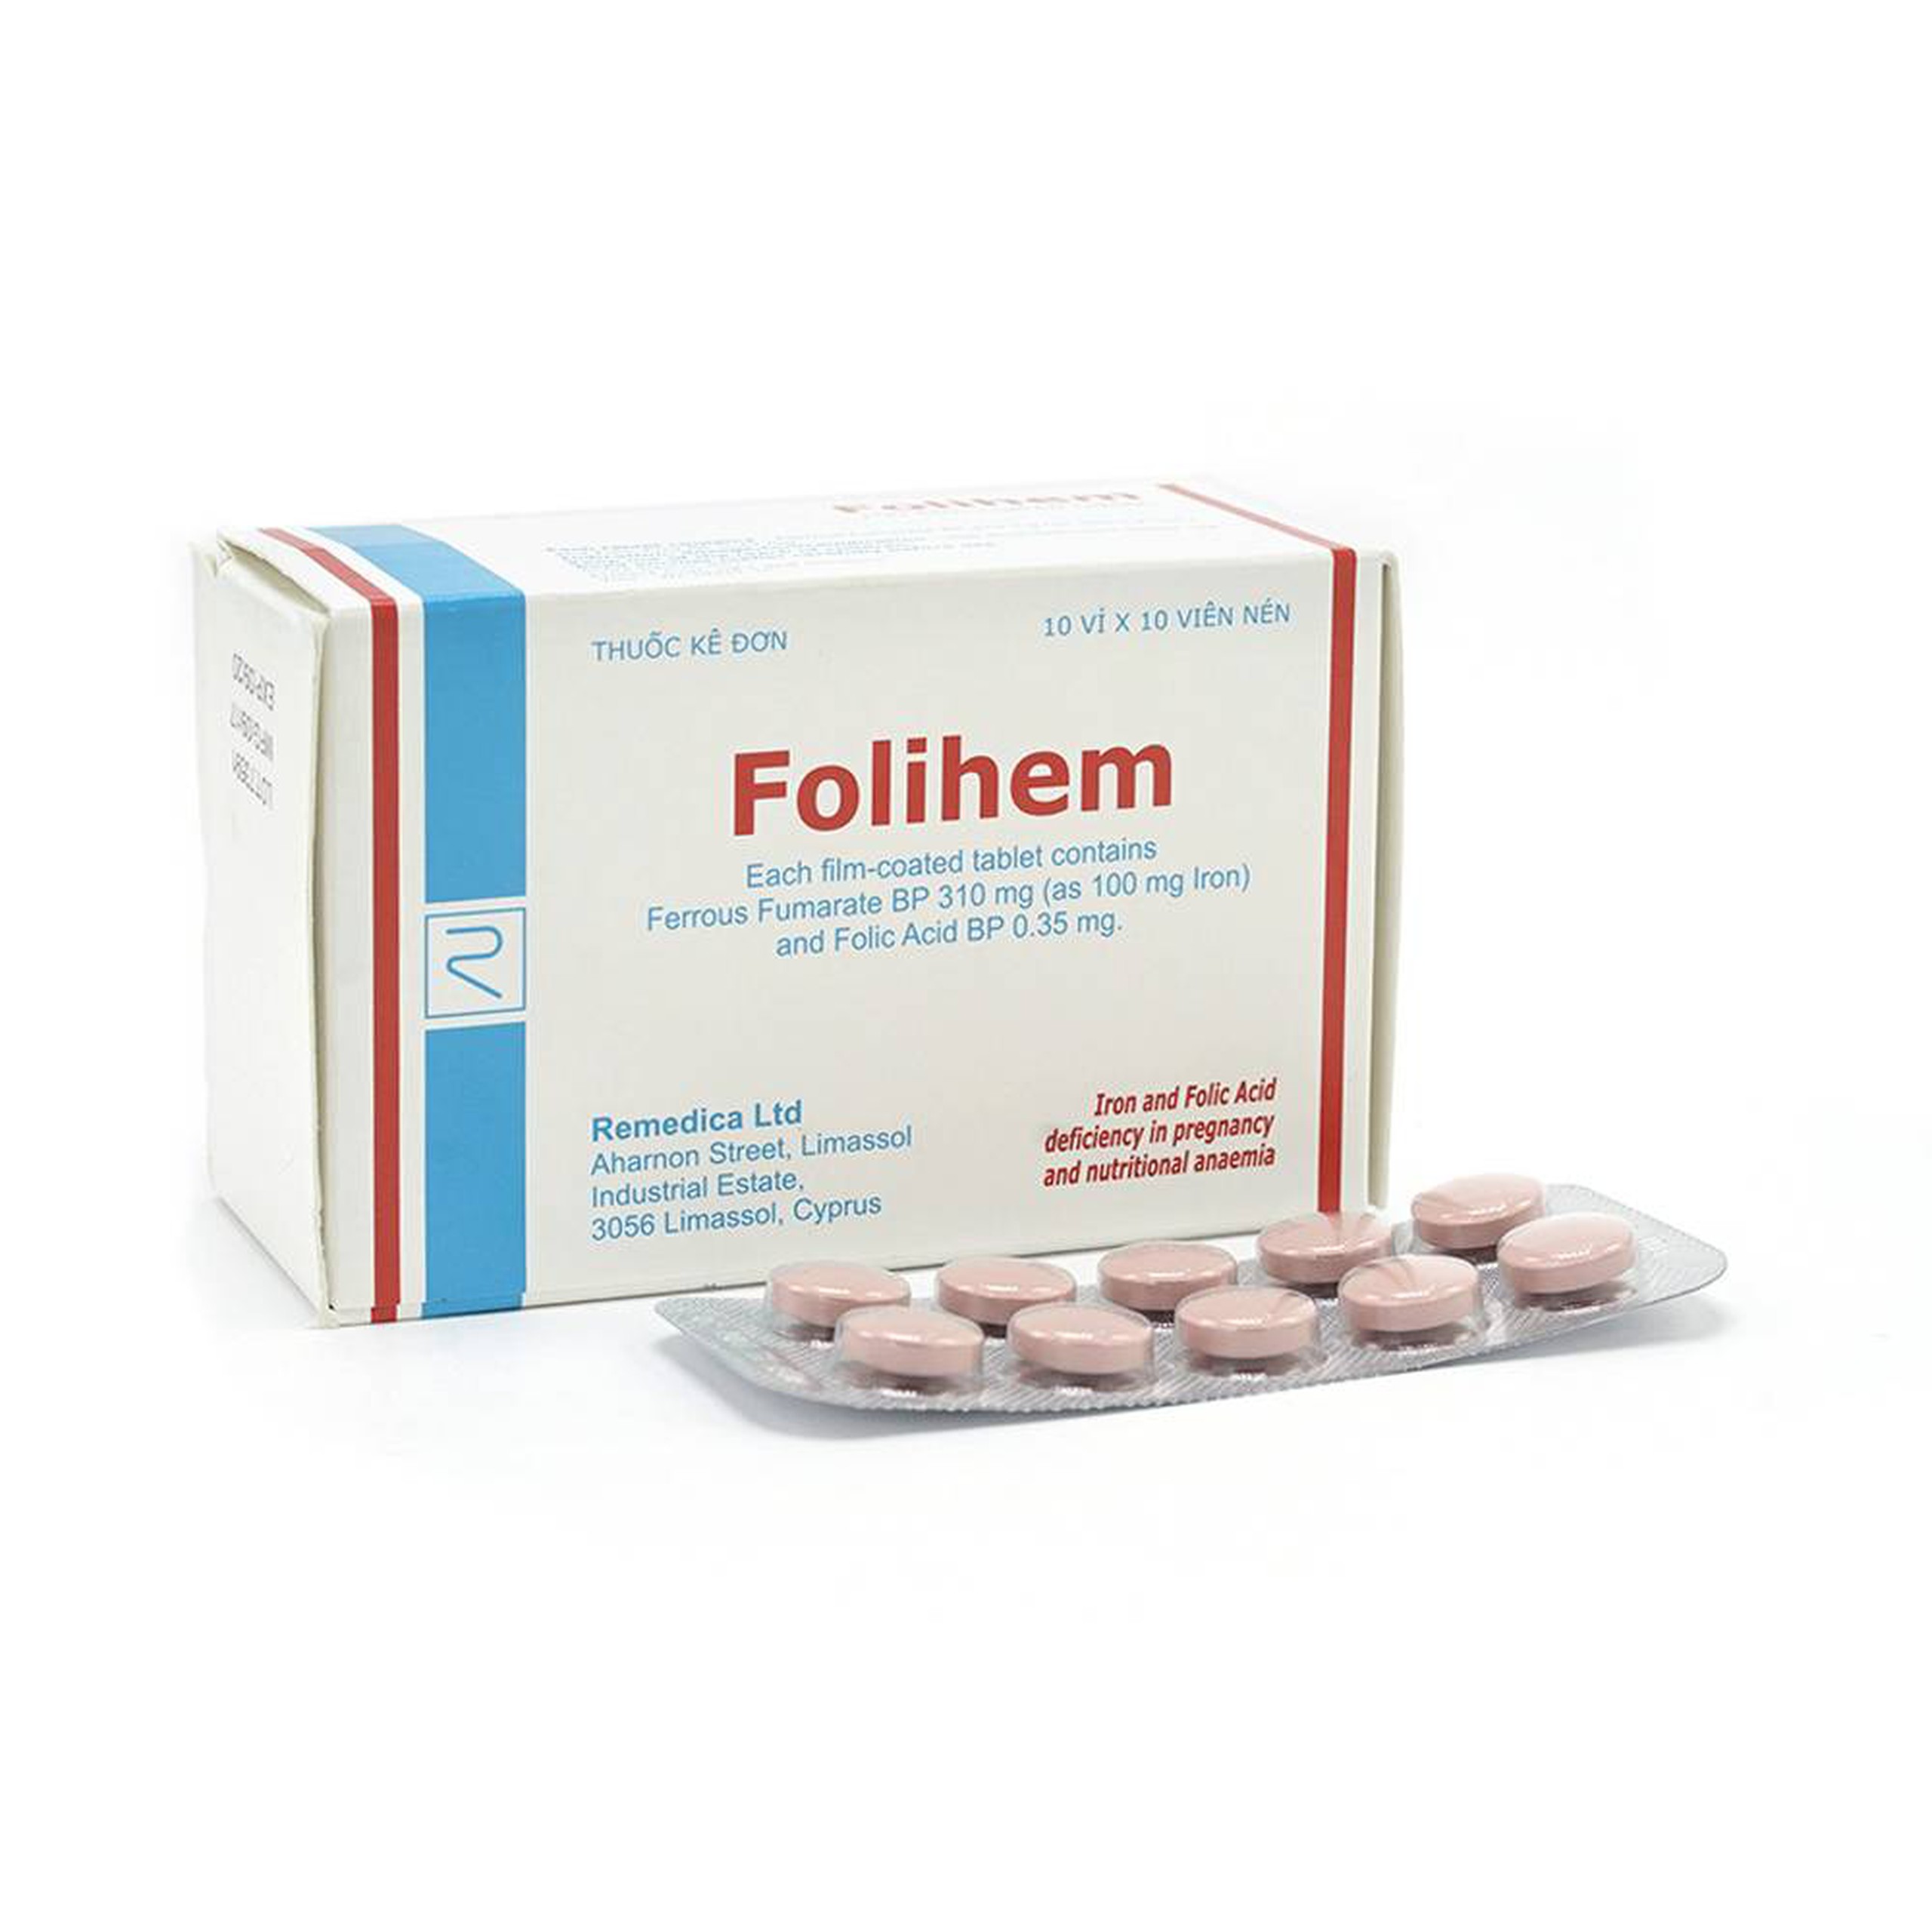 Thuốc Folihem Remedica phòng ngừa thiếu máu do thiếu sắt và acid folic trong thai kỳ (10 vỉ x 10 viên)